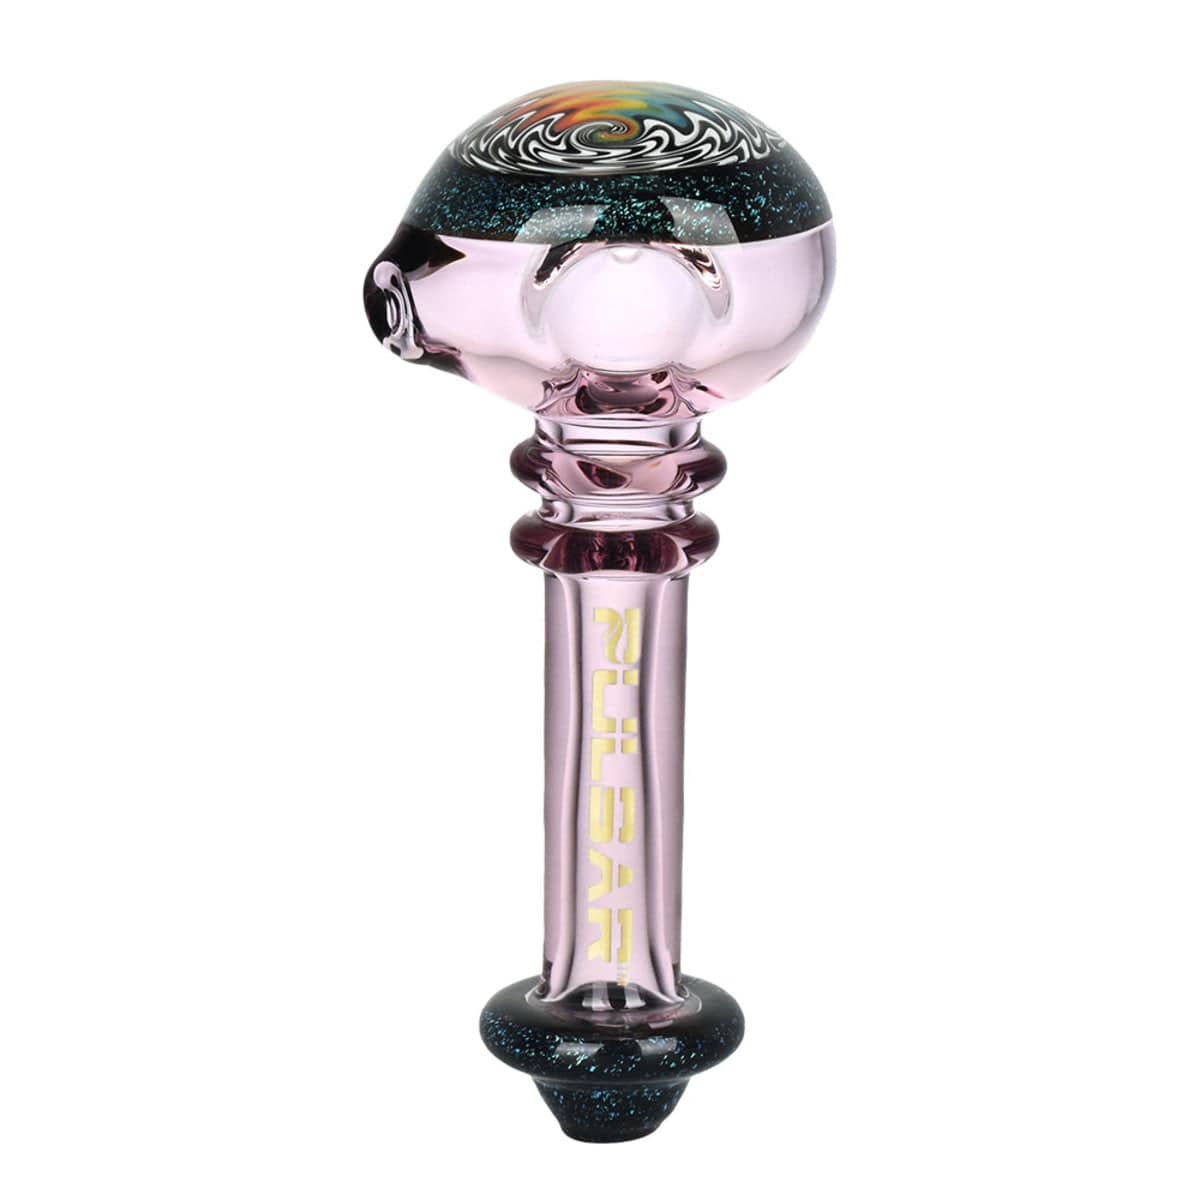 Gift Guru Hand Pipe HP146 Pulsar Oort Cloud Spoon Pipe - 4.5" / Colors Vary